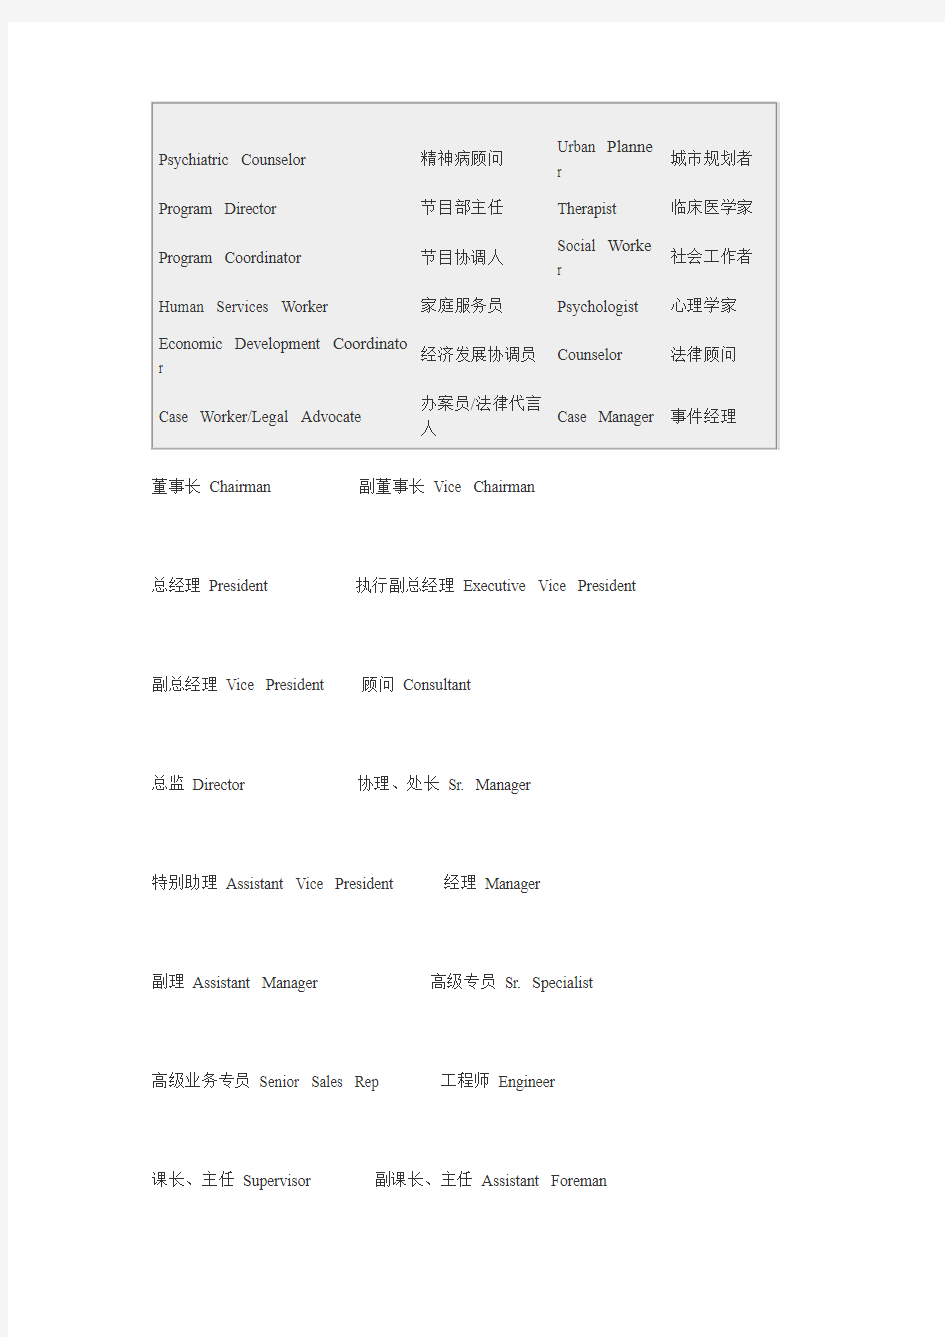 中英文职位对照表